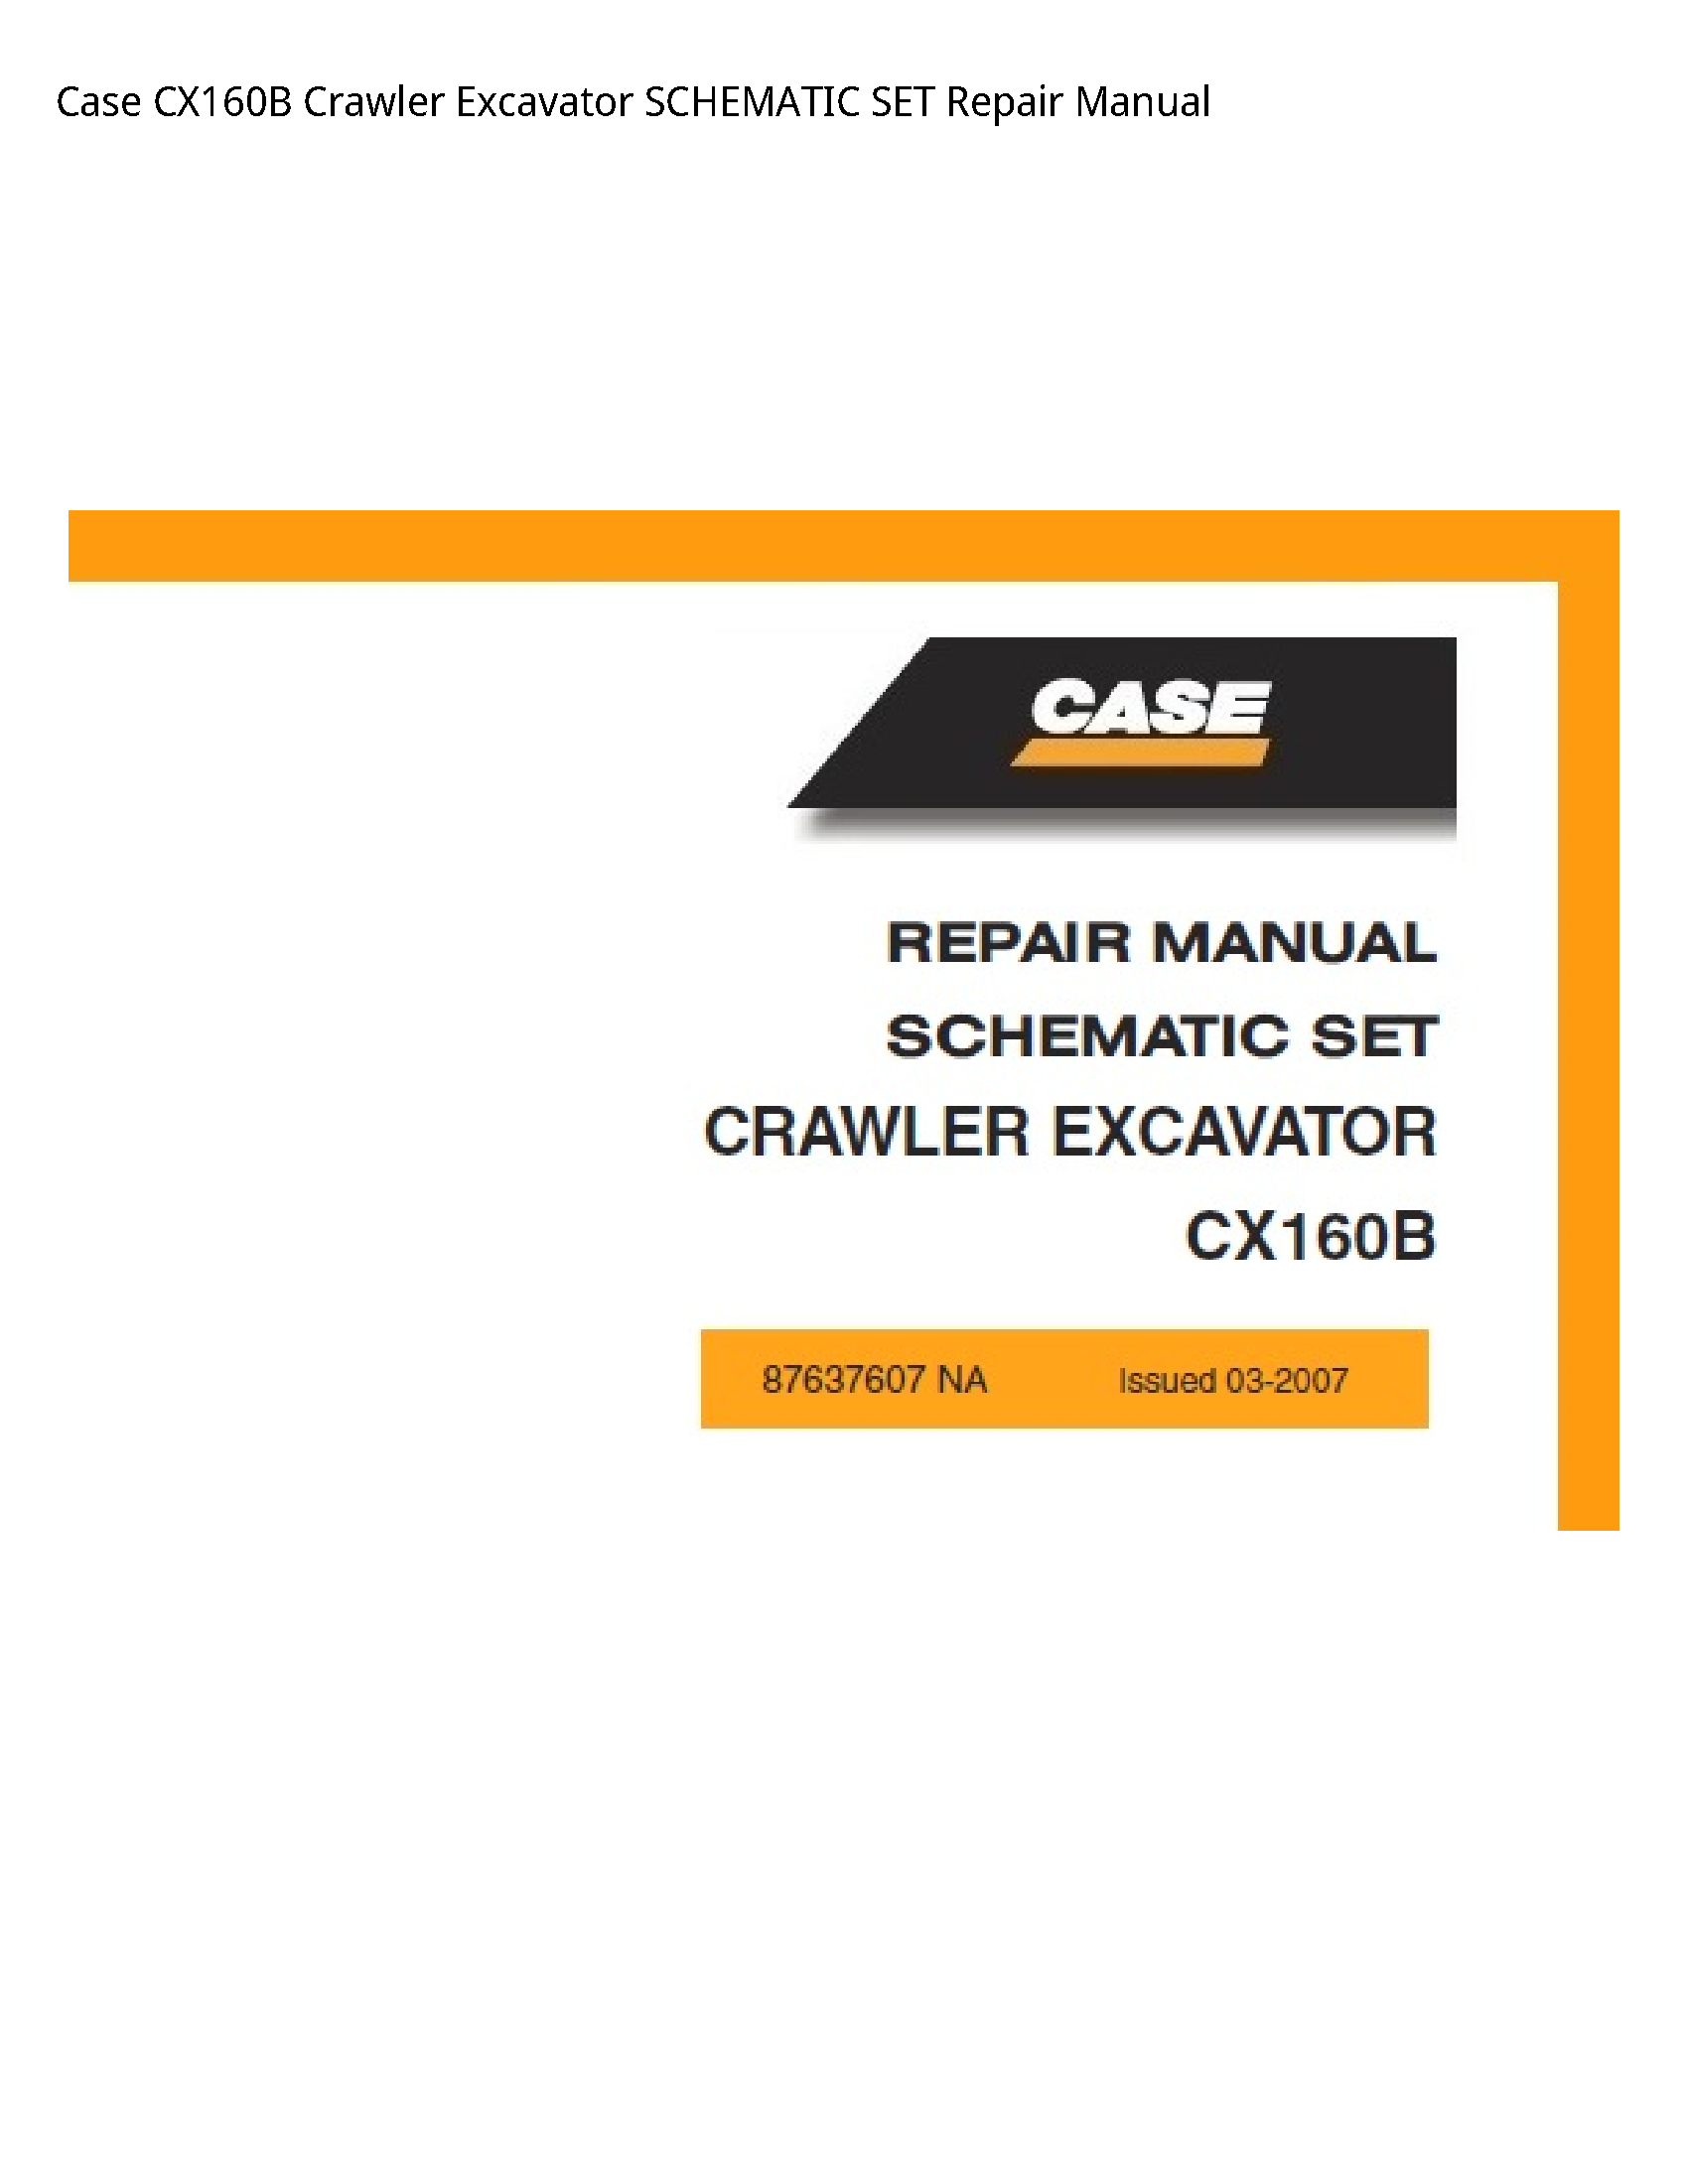 Case/Case IH CX160B Crawler Excavator SCHEMATIC SET Repair manual